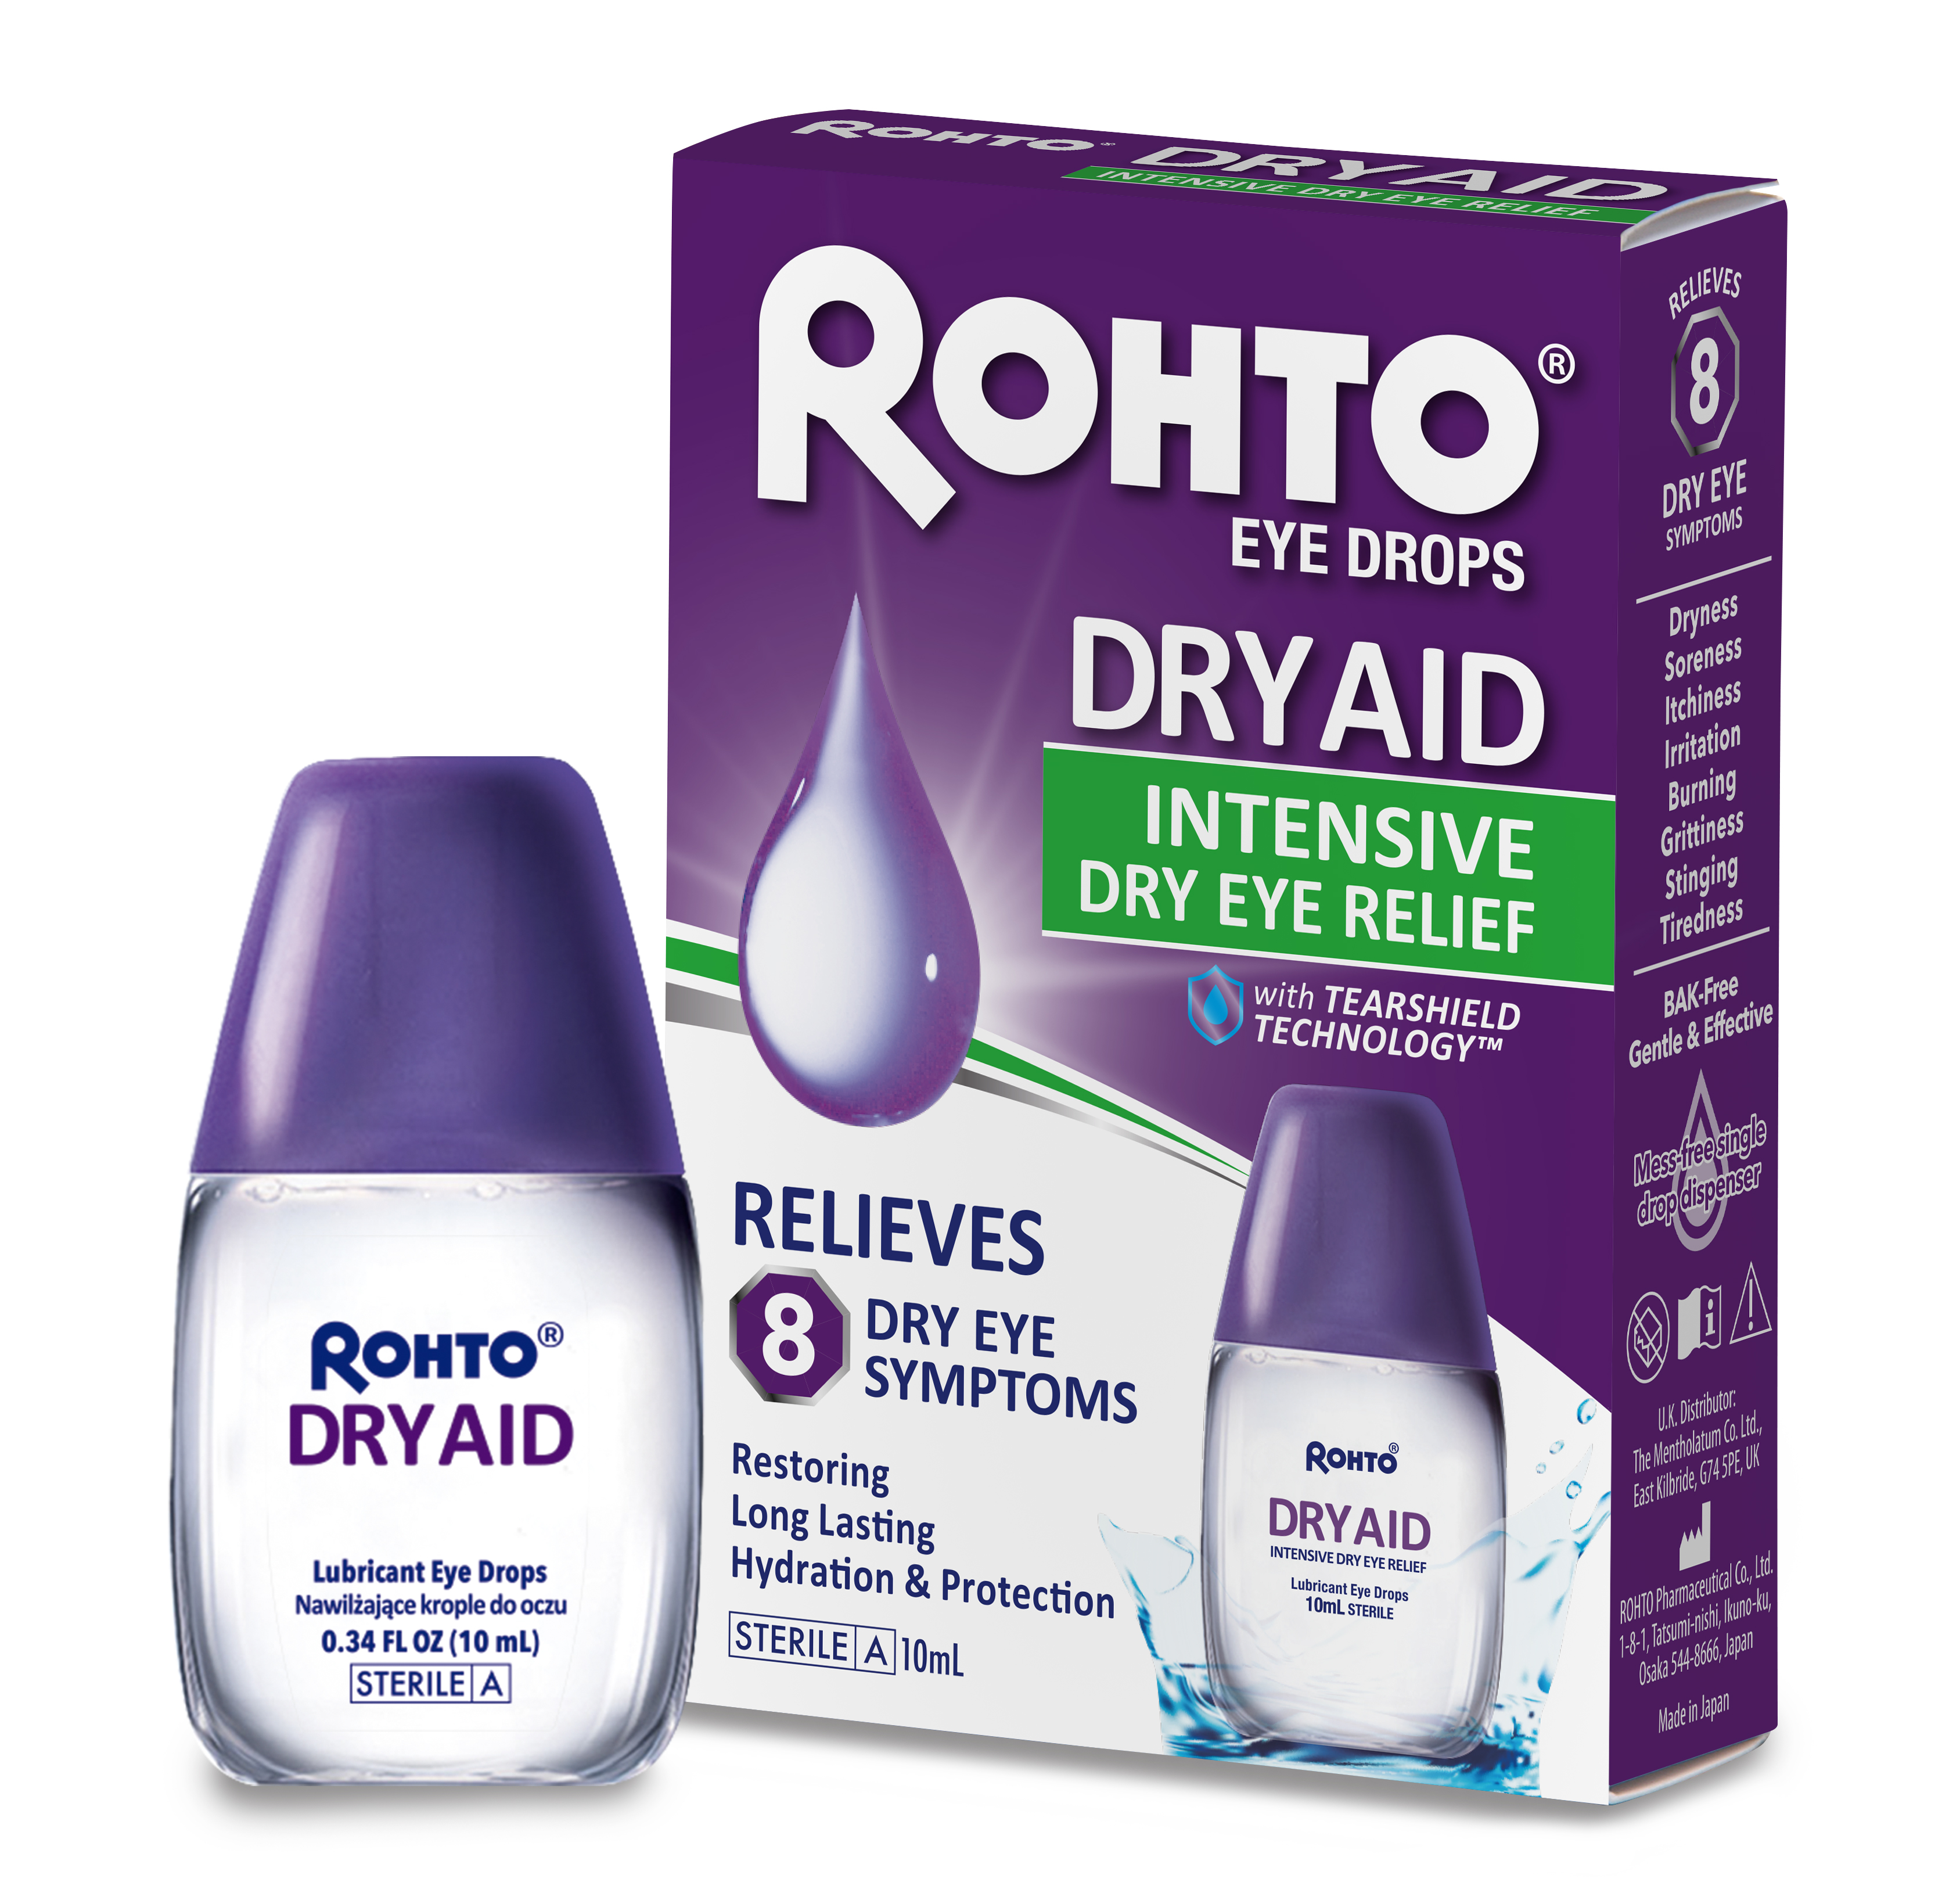 イギリス ポーランドにて ドライアイに特化したrohto Dry Aid発売開始 ロート製薬株式会社のプレスリリース